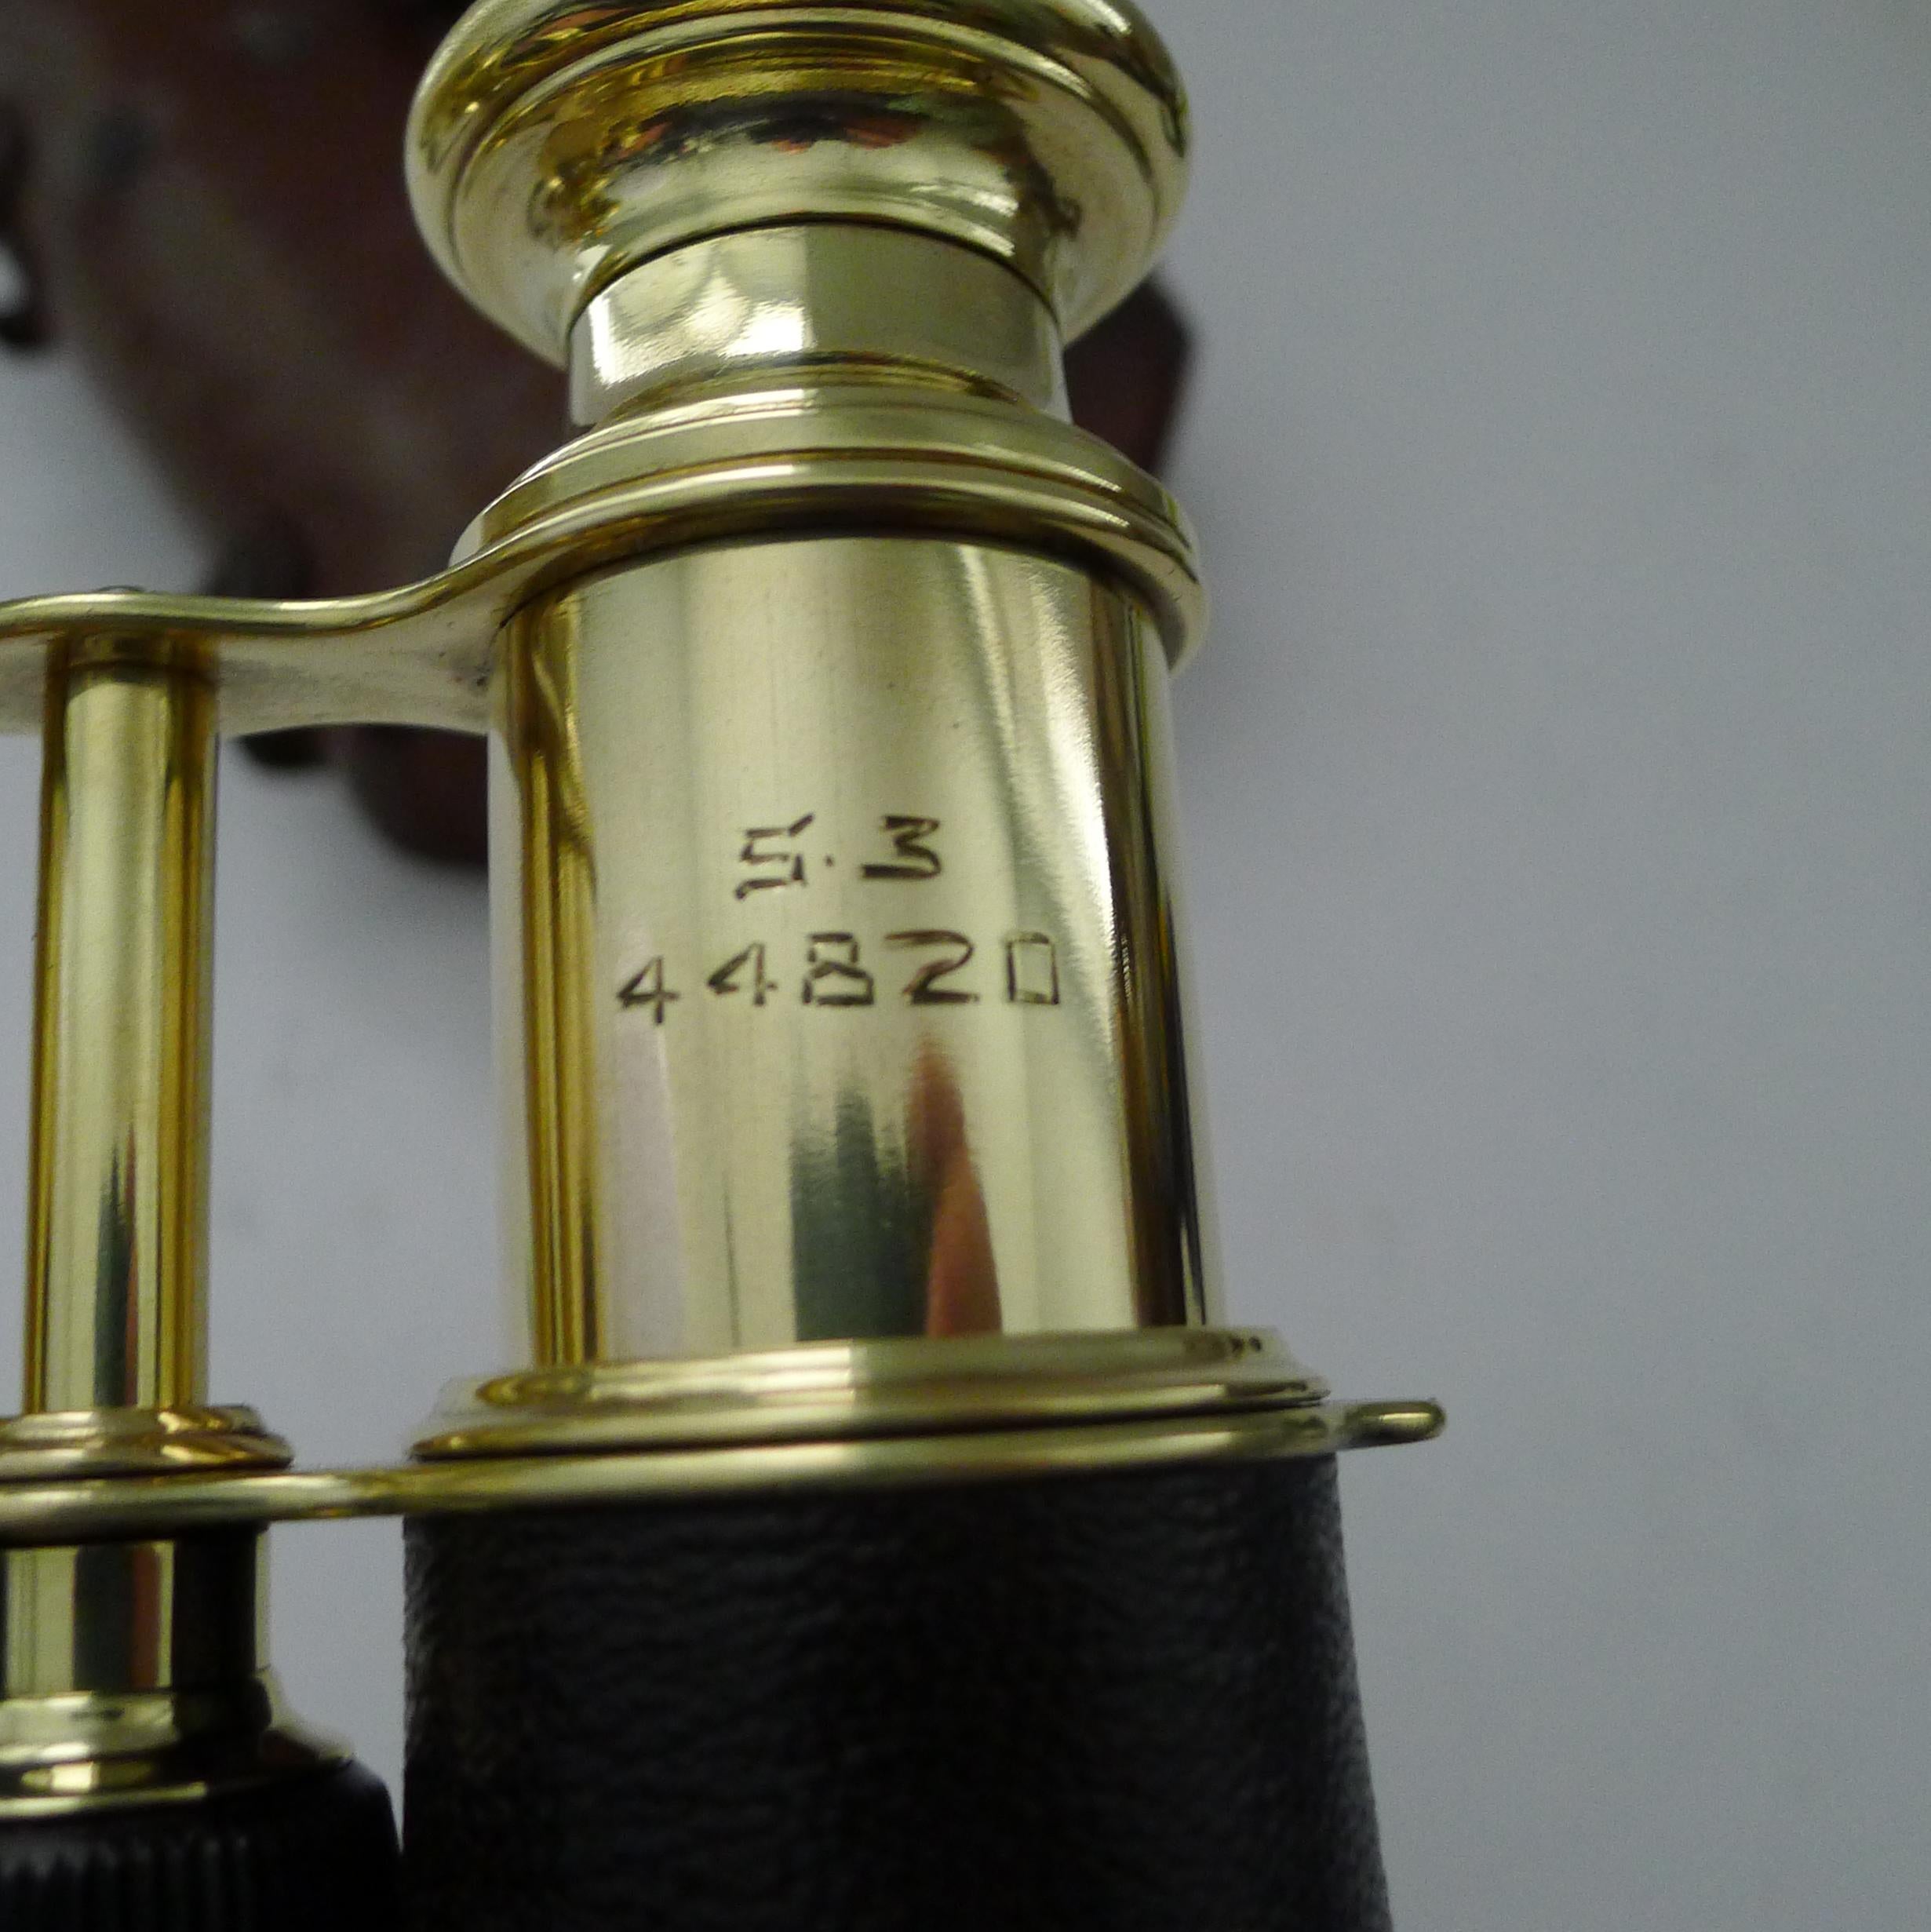 Brass Pair WW1 Binoculars - British Officer's Issue by LeMaire, Paris